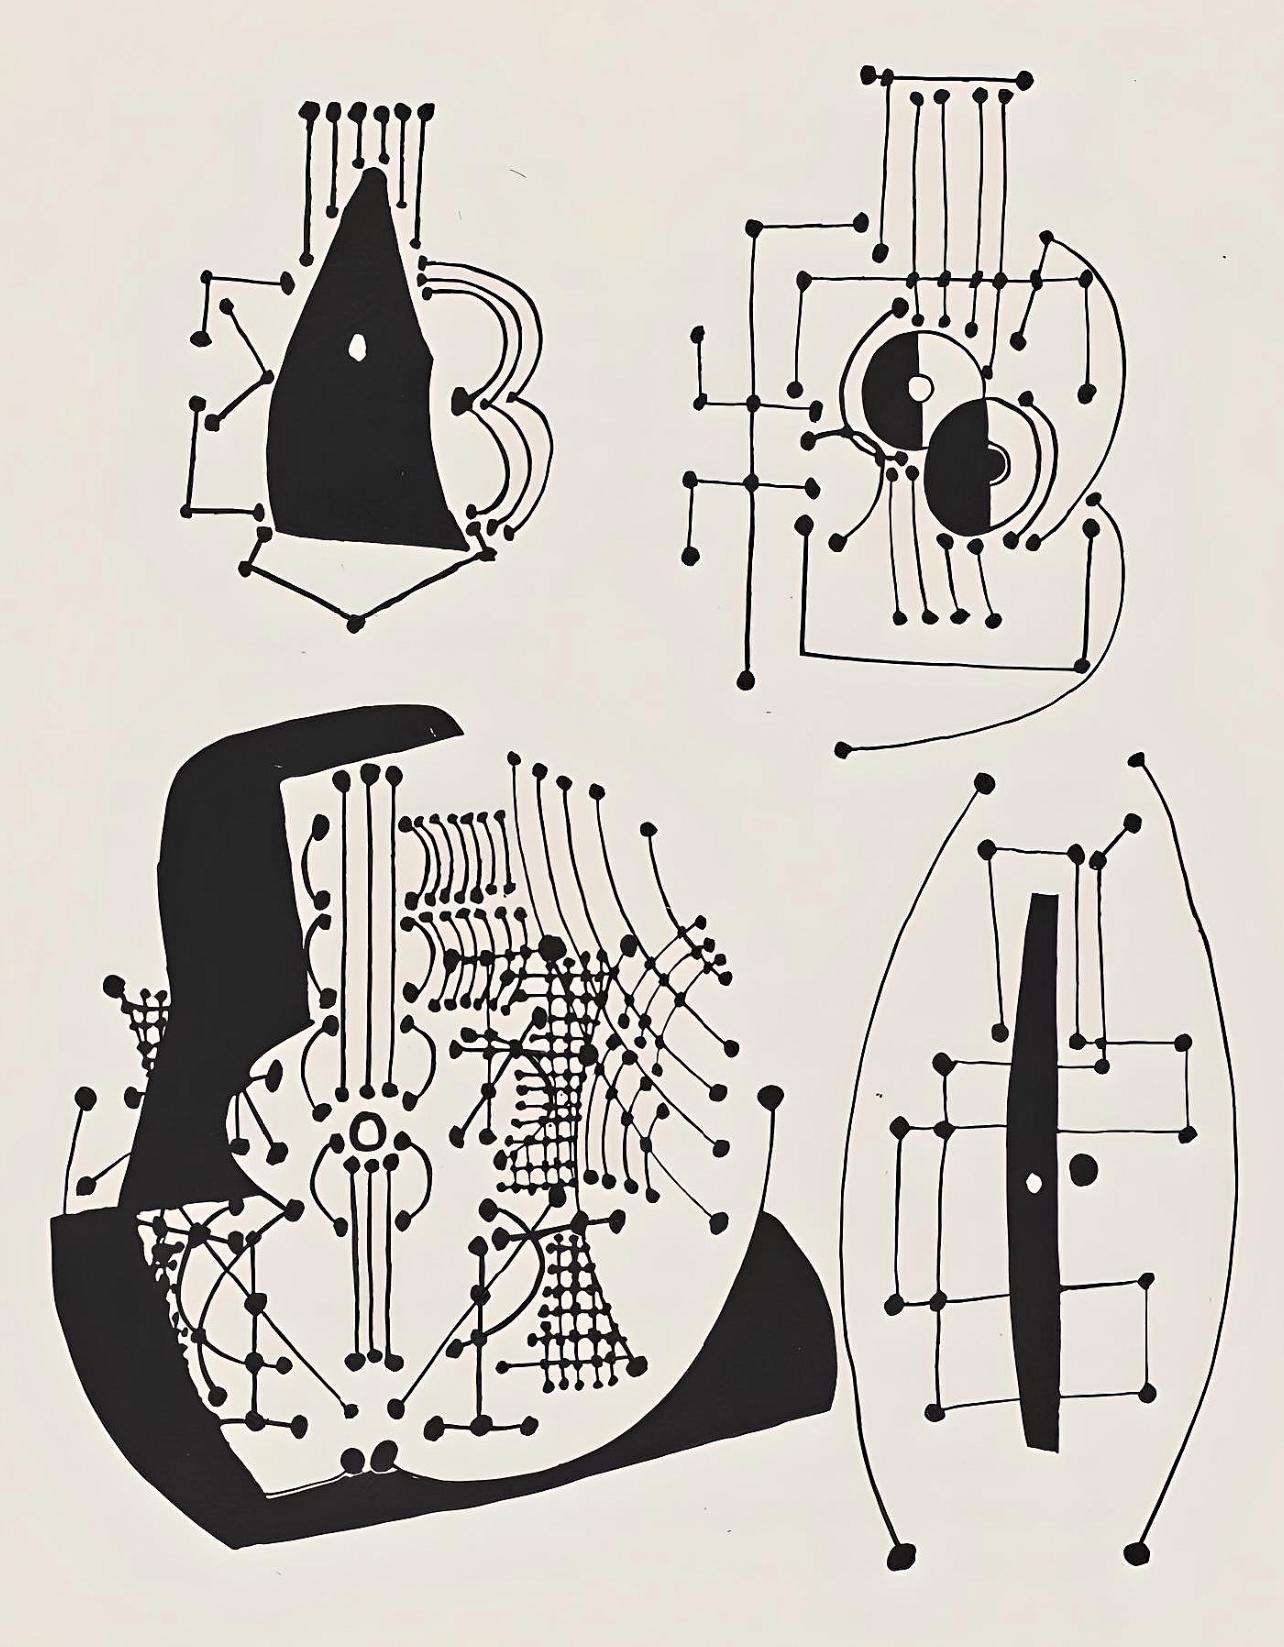 Picasso, Composition (Johnson, Vollard 193), Hélène chez Archimède (after)